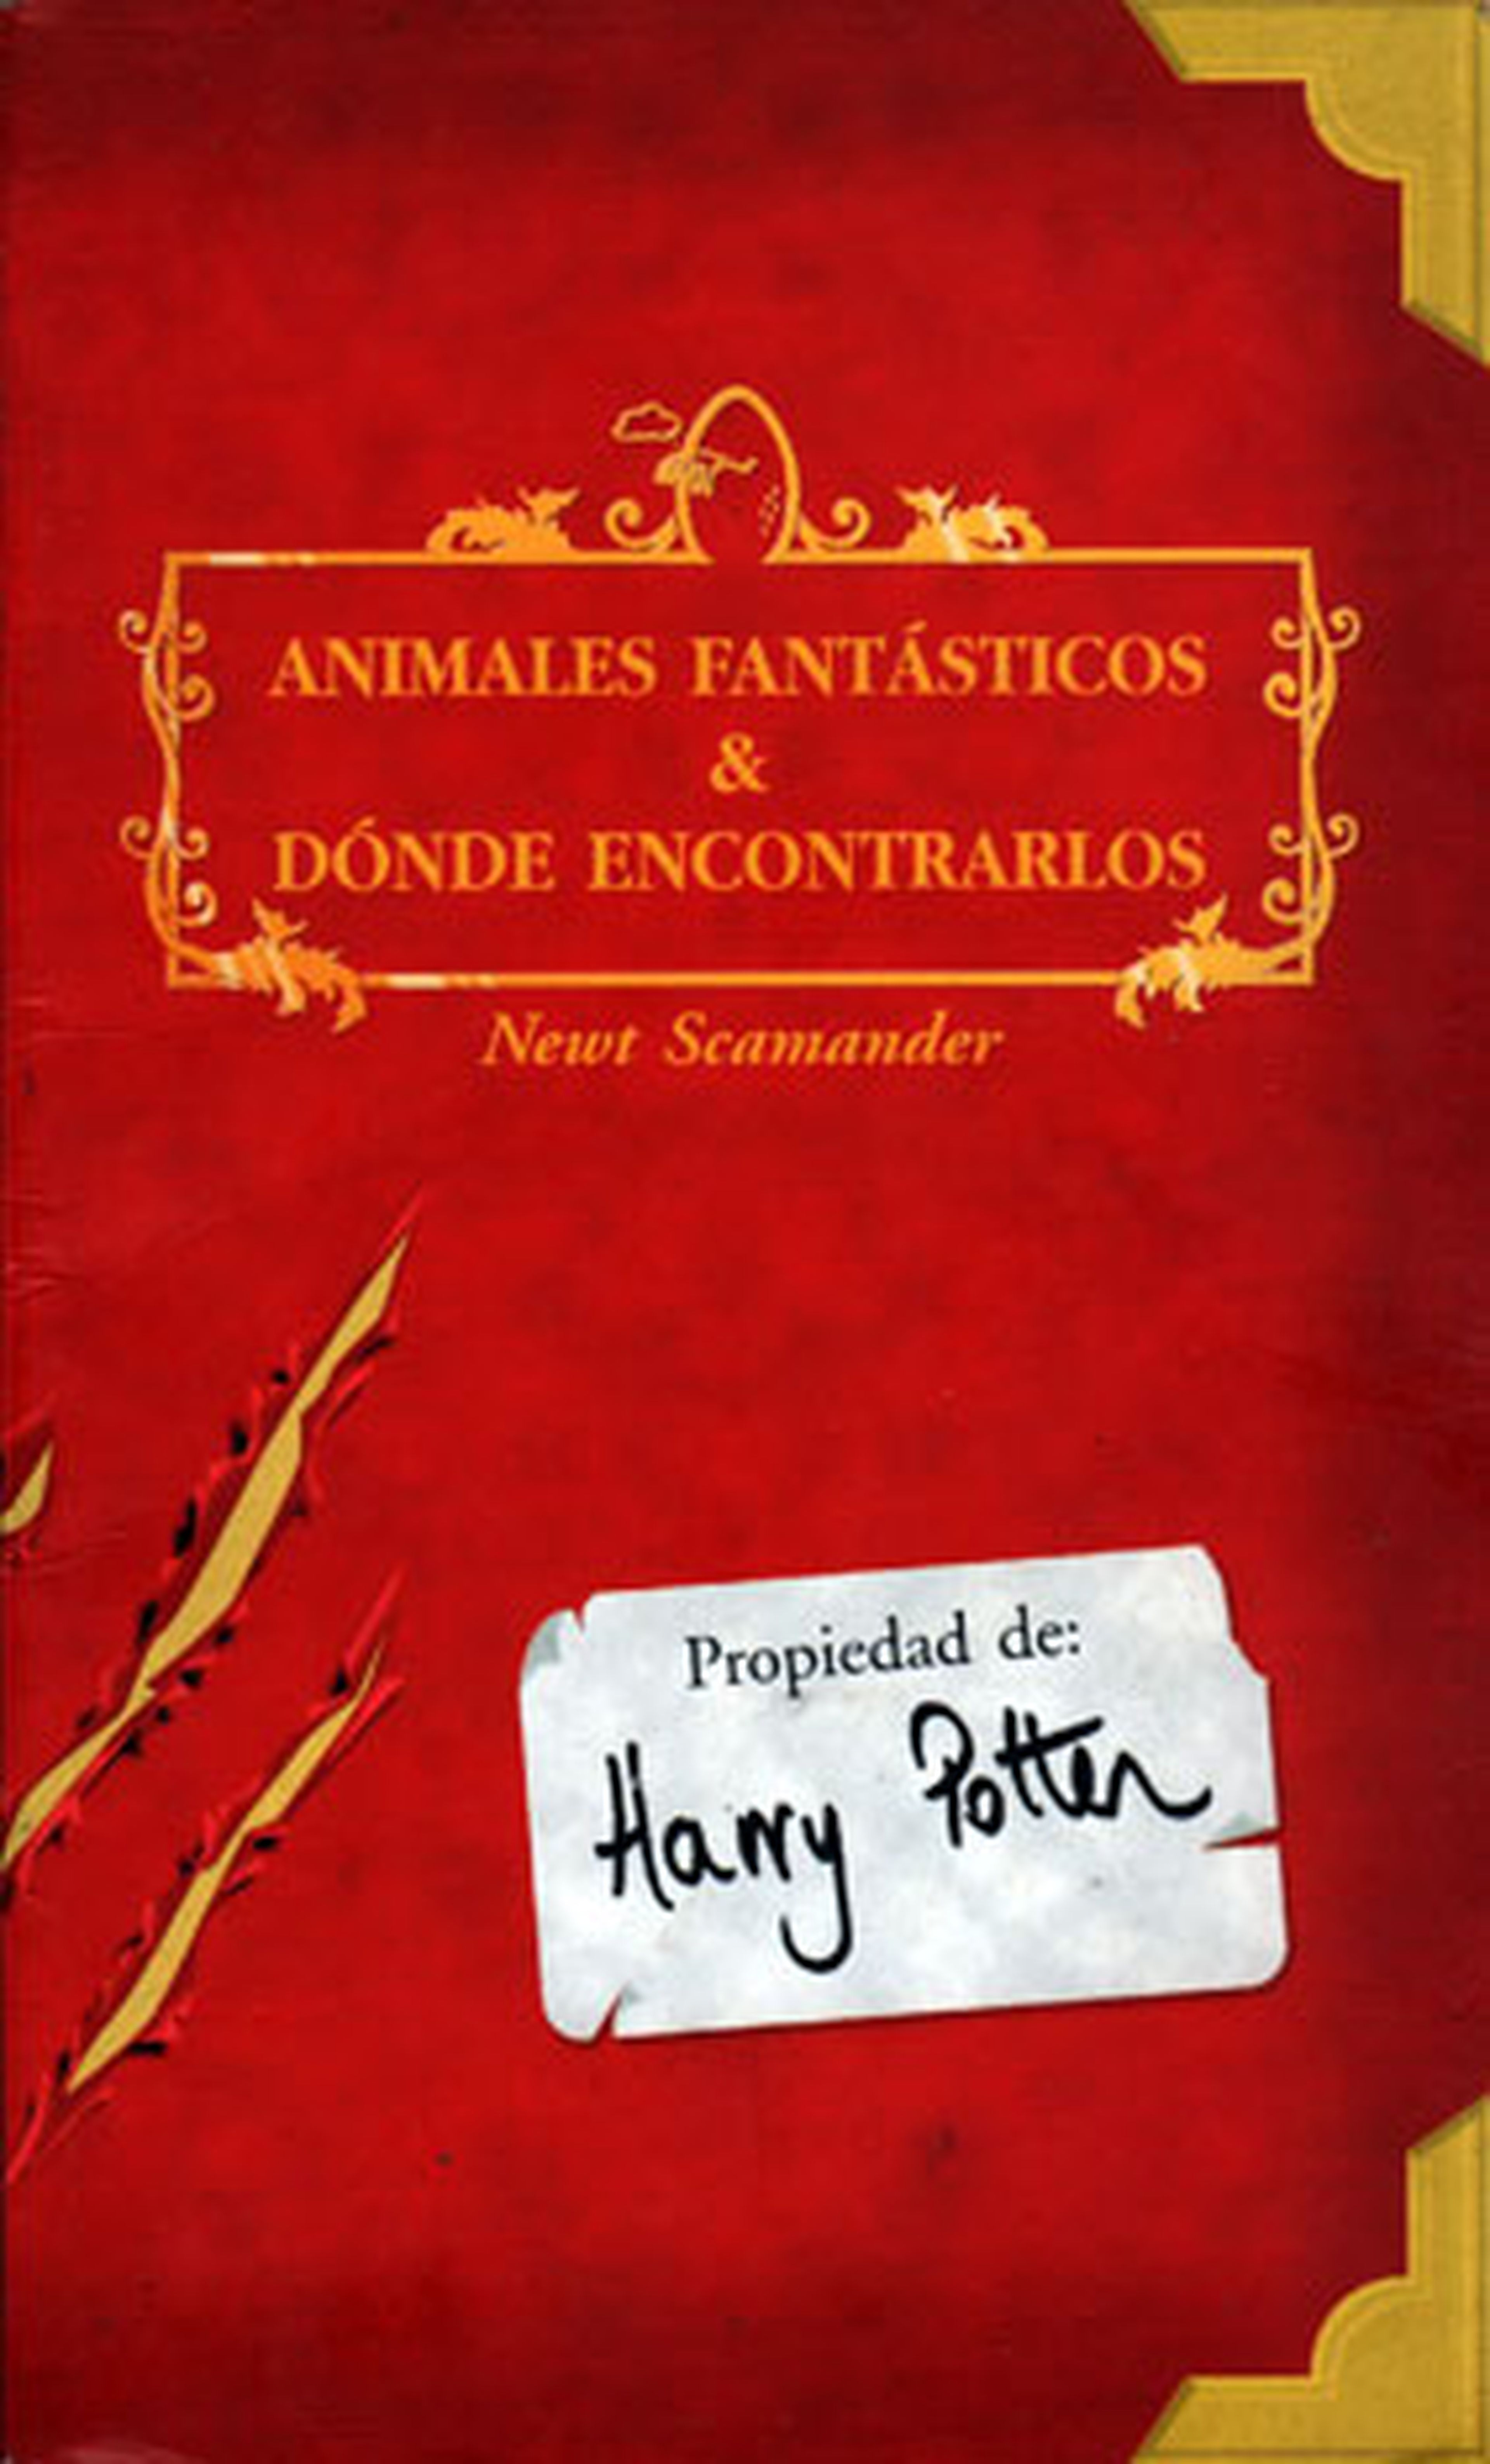 Universos de ficción: Harry Potter